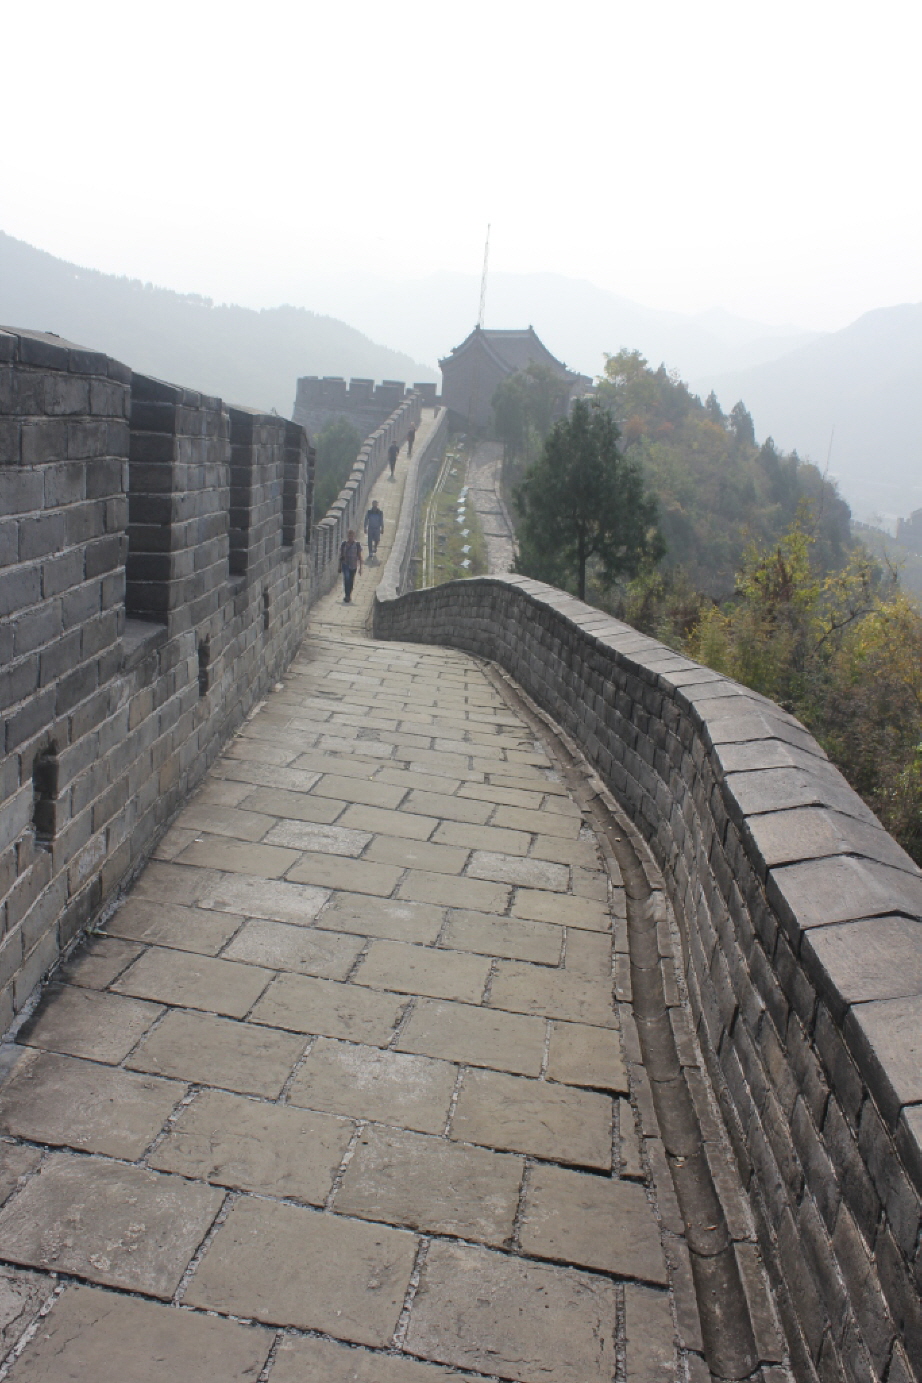 Die Große Mauer: 214 v. Chr. ließ der erste chinesische Kaiser, Qin Shihuangdi, Schutzwälle errichten, die das chinesische Kaiserreich nach der Expansion über den Gelben Fluss gegen die Völker aus dem Norden, vor allem die Xiongnu, schützen sollten. Im Un